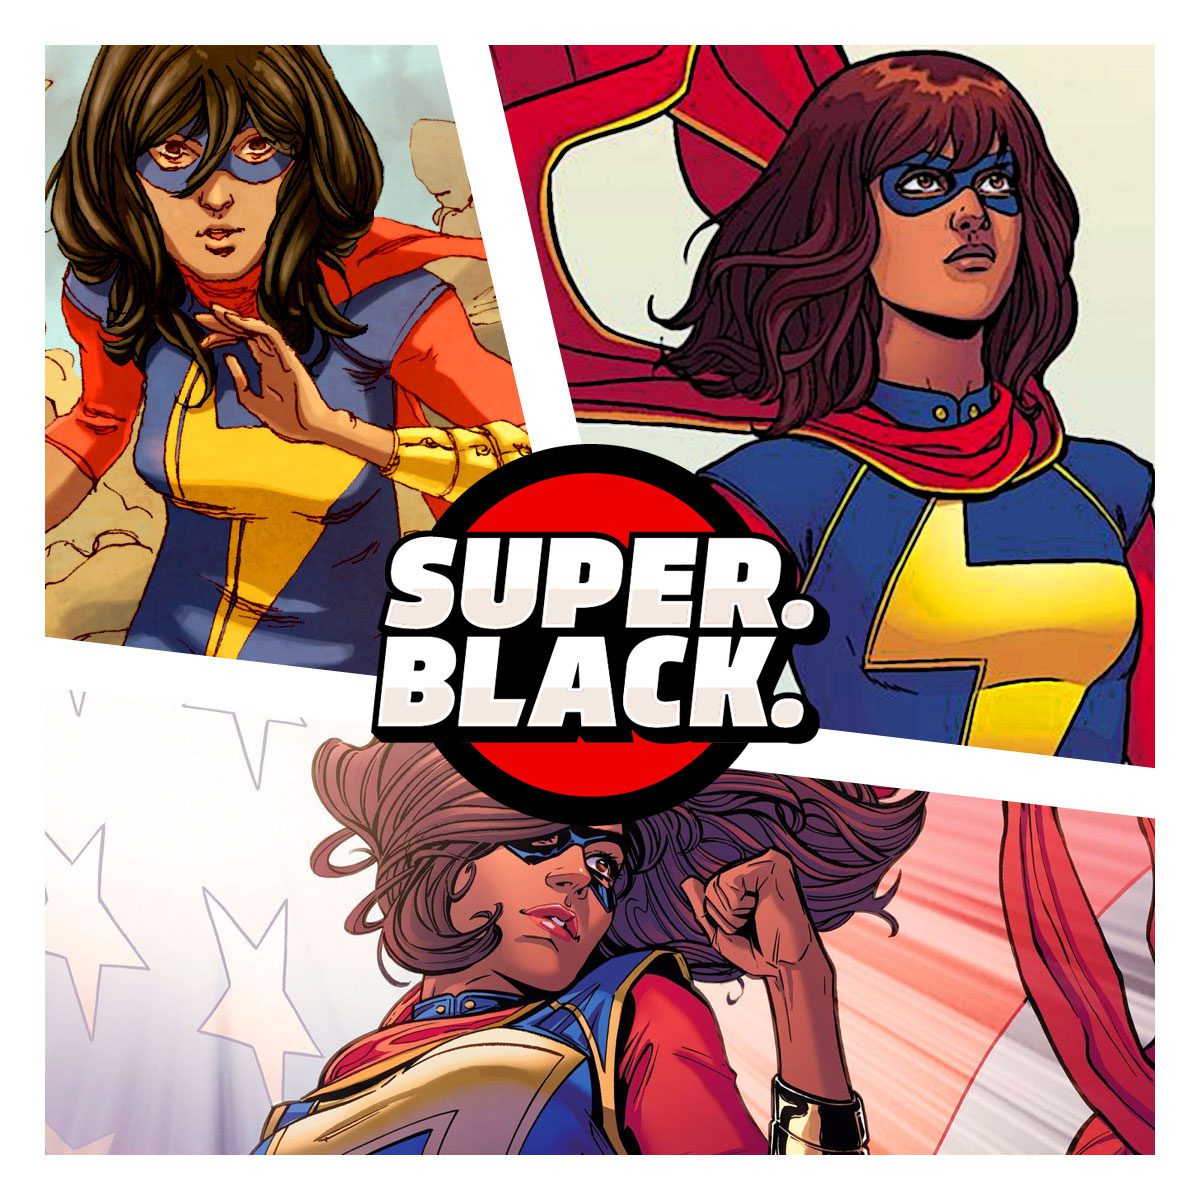 Kamala Khan a.k.a Ms. Marvel - Super. Black.